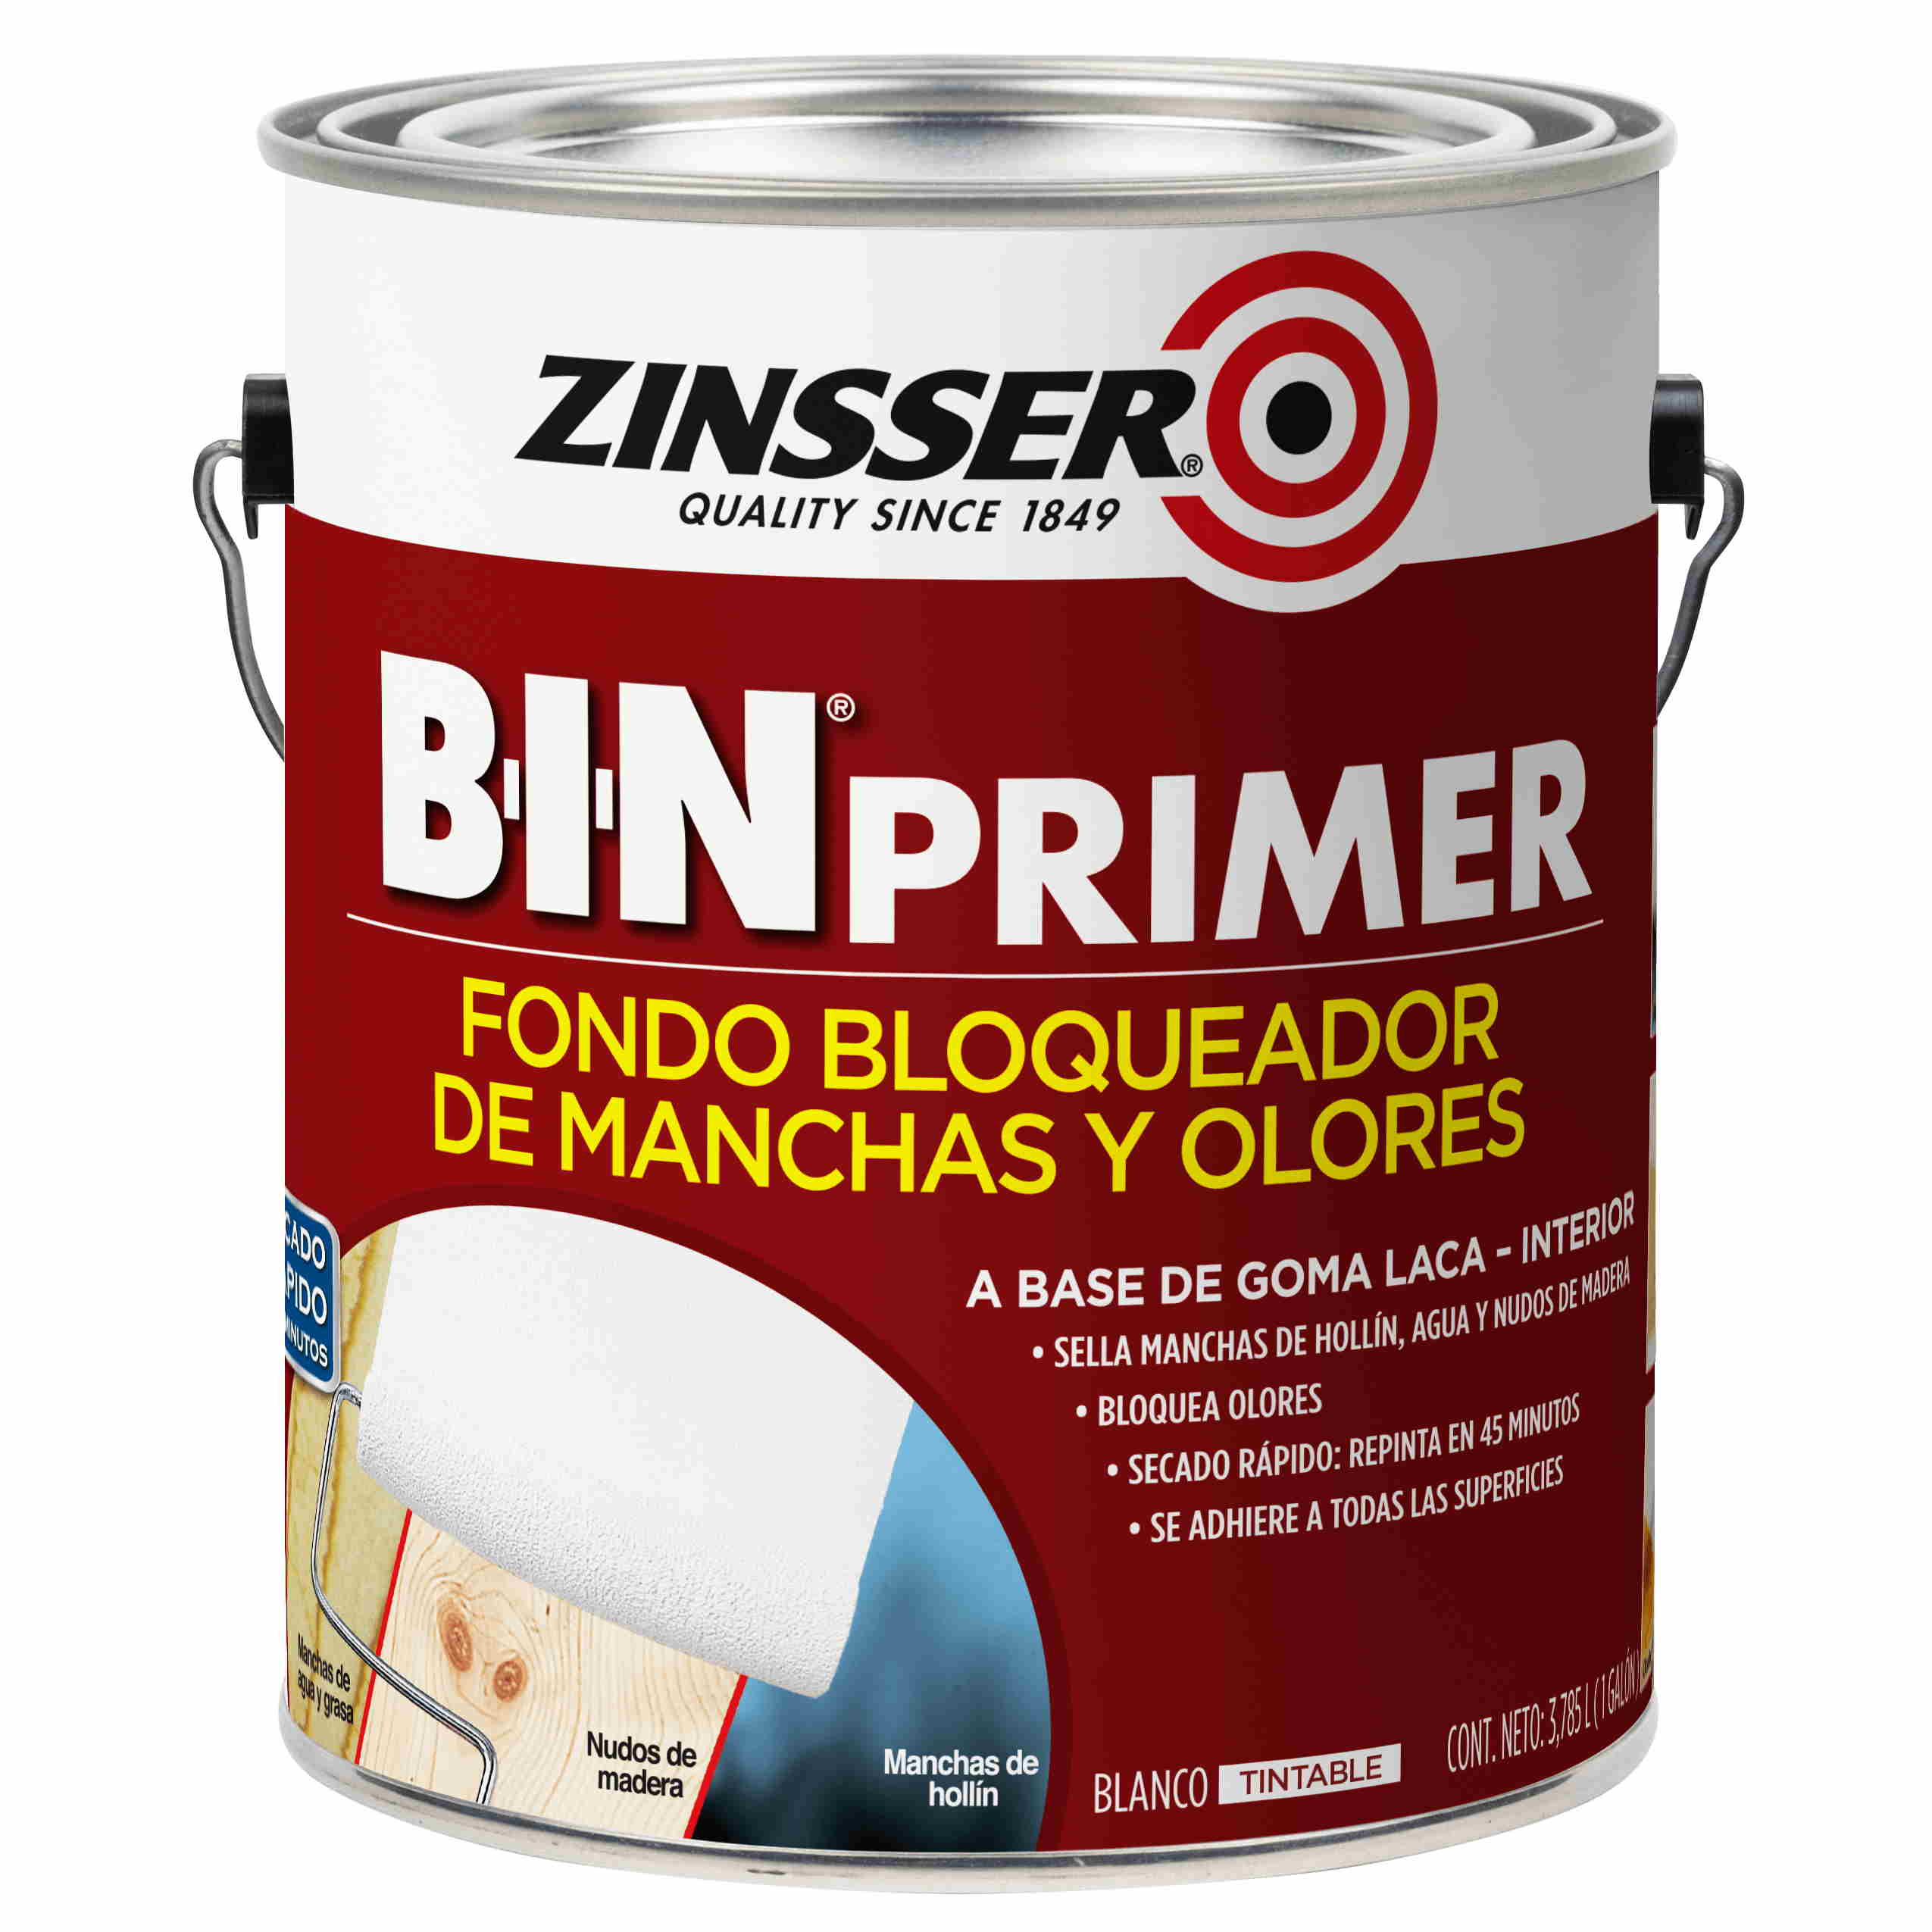 Zinsser B-I-N Primer - Fondo Bloqueador de Manchas y Olores